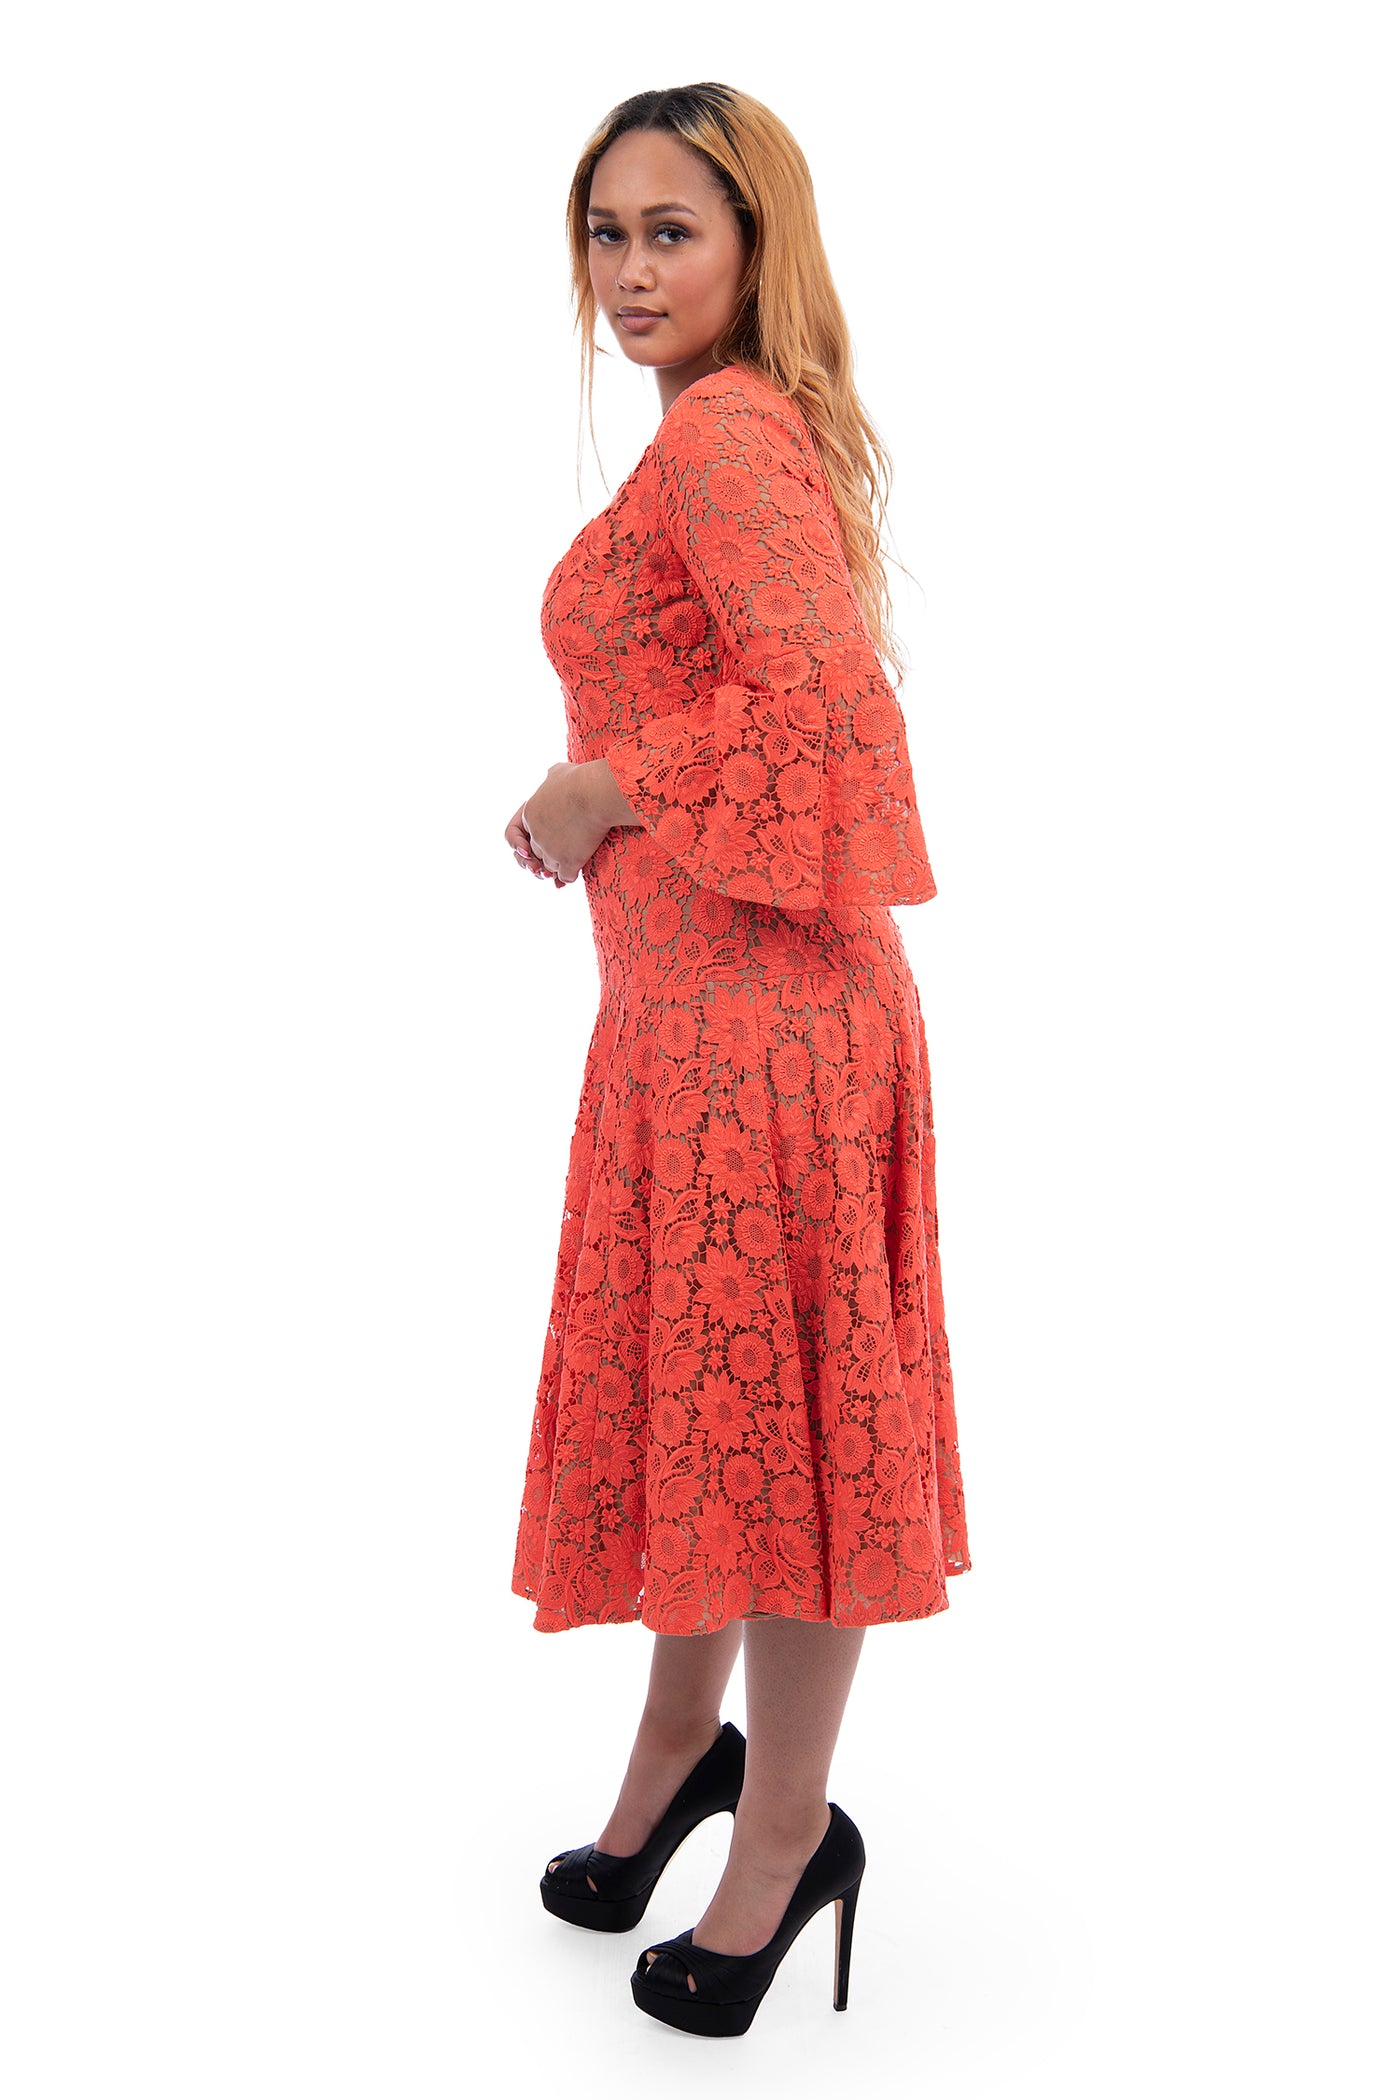 Michael Kors orange 3 quarter length sleeve crochet detailing midi length dress